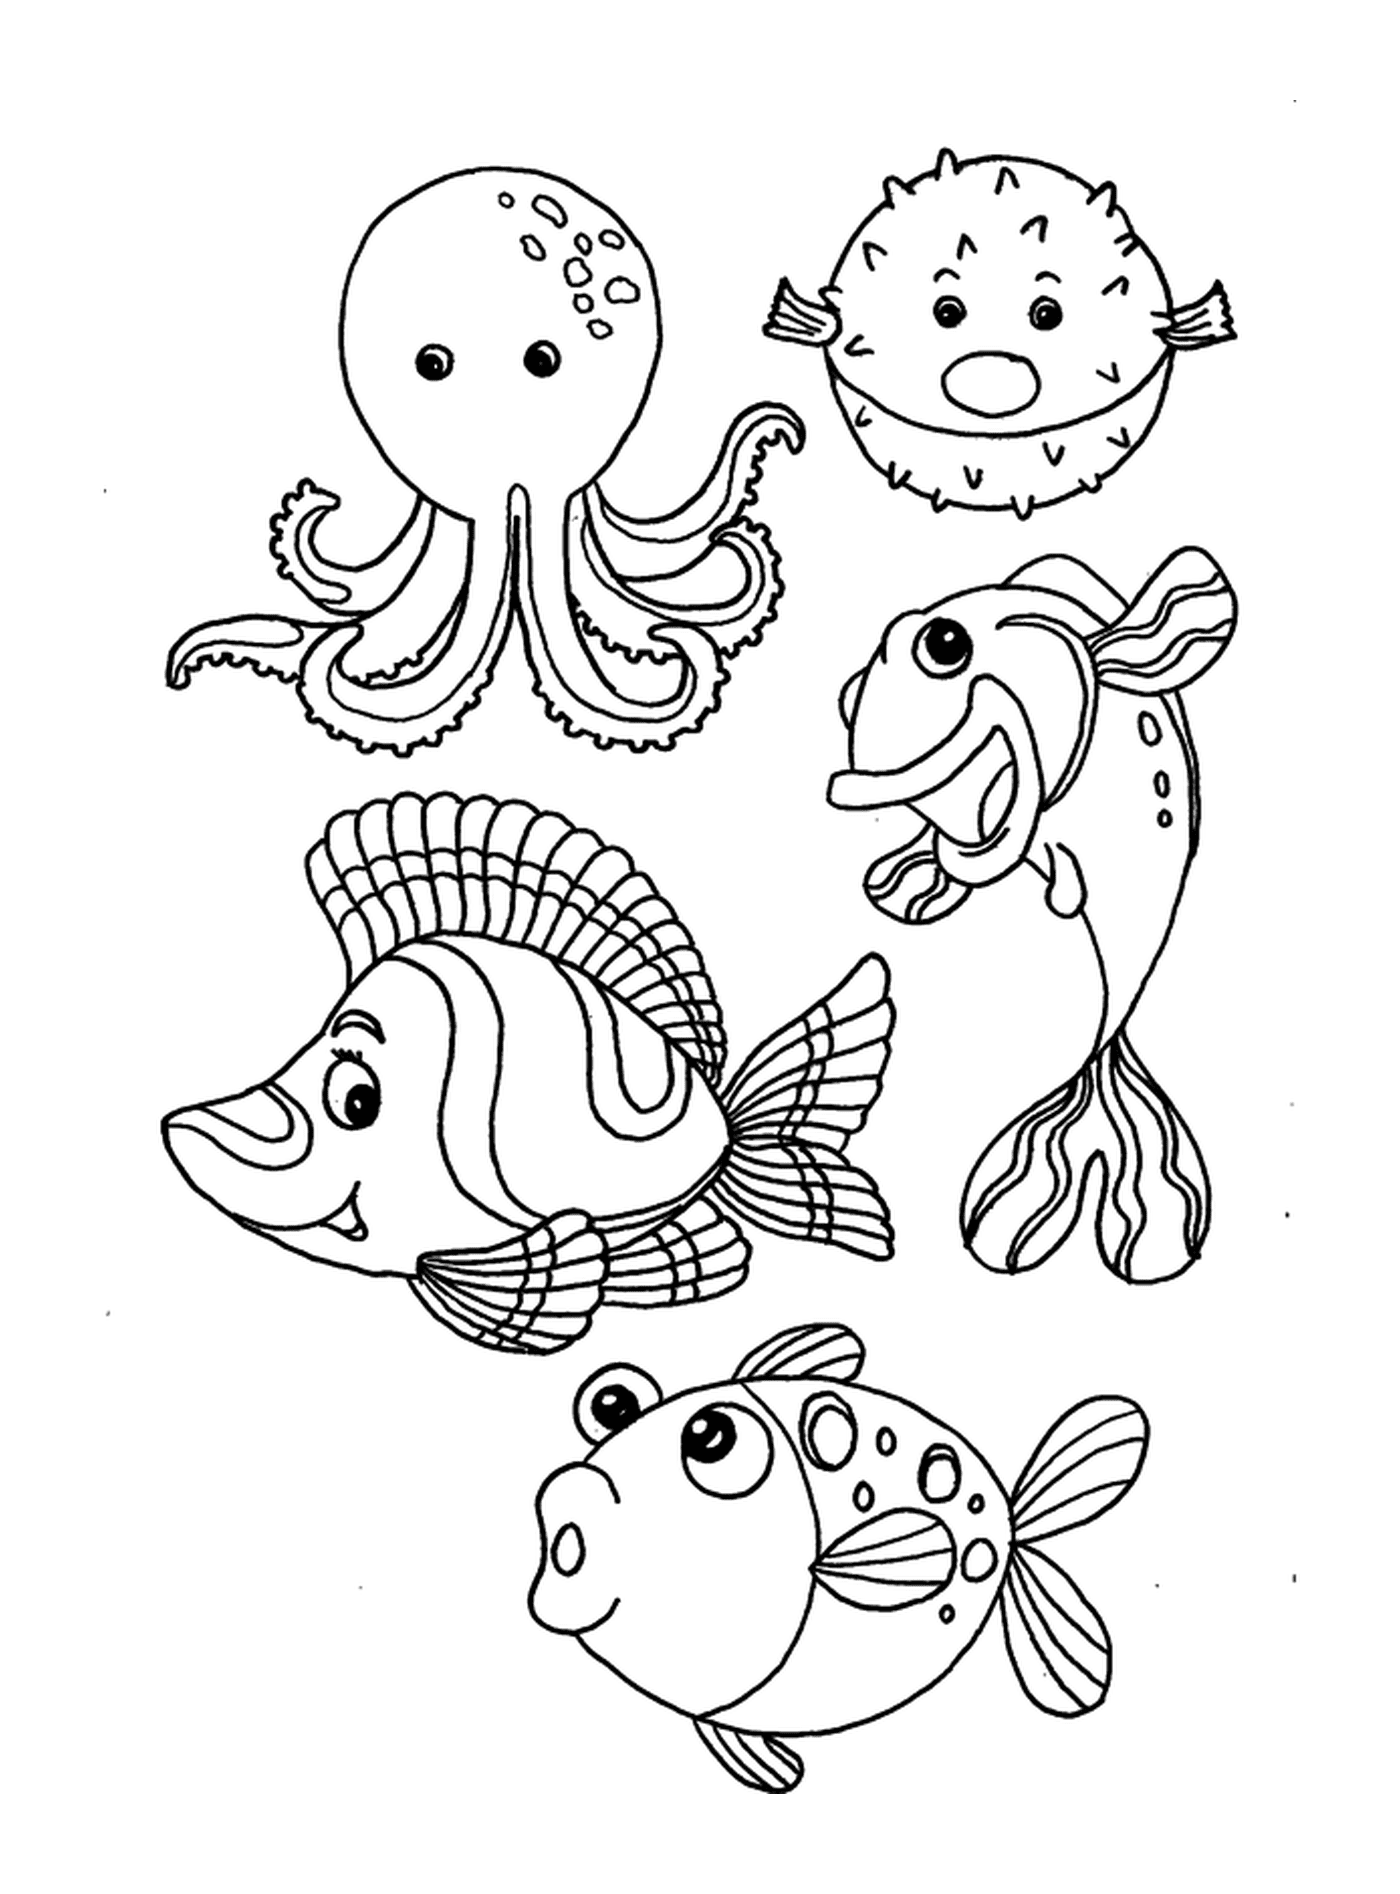  समुद्री मछलियों का एक समूह 